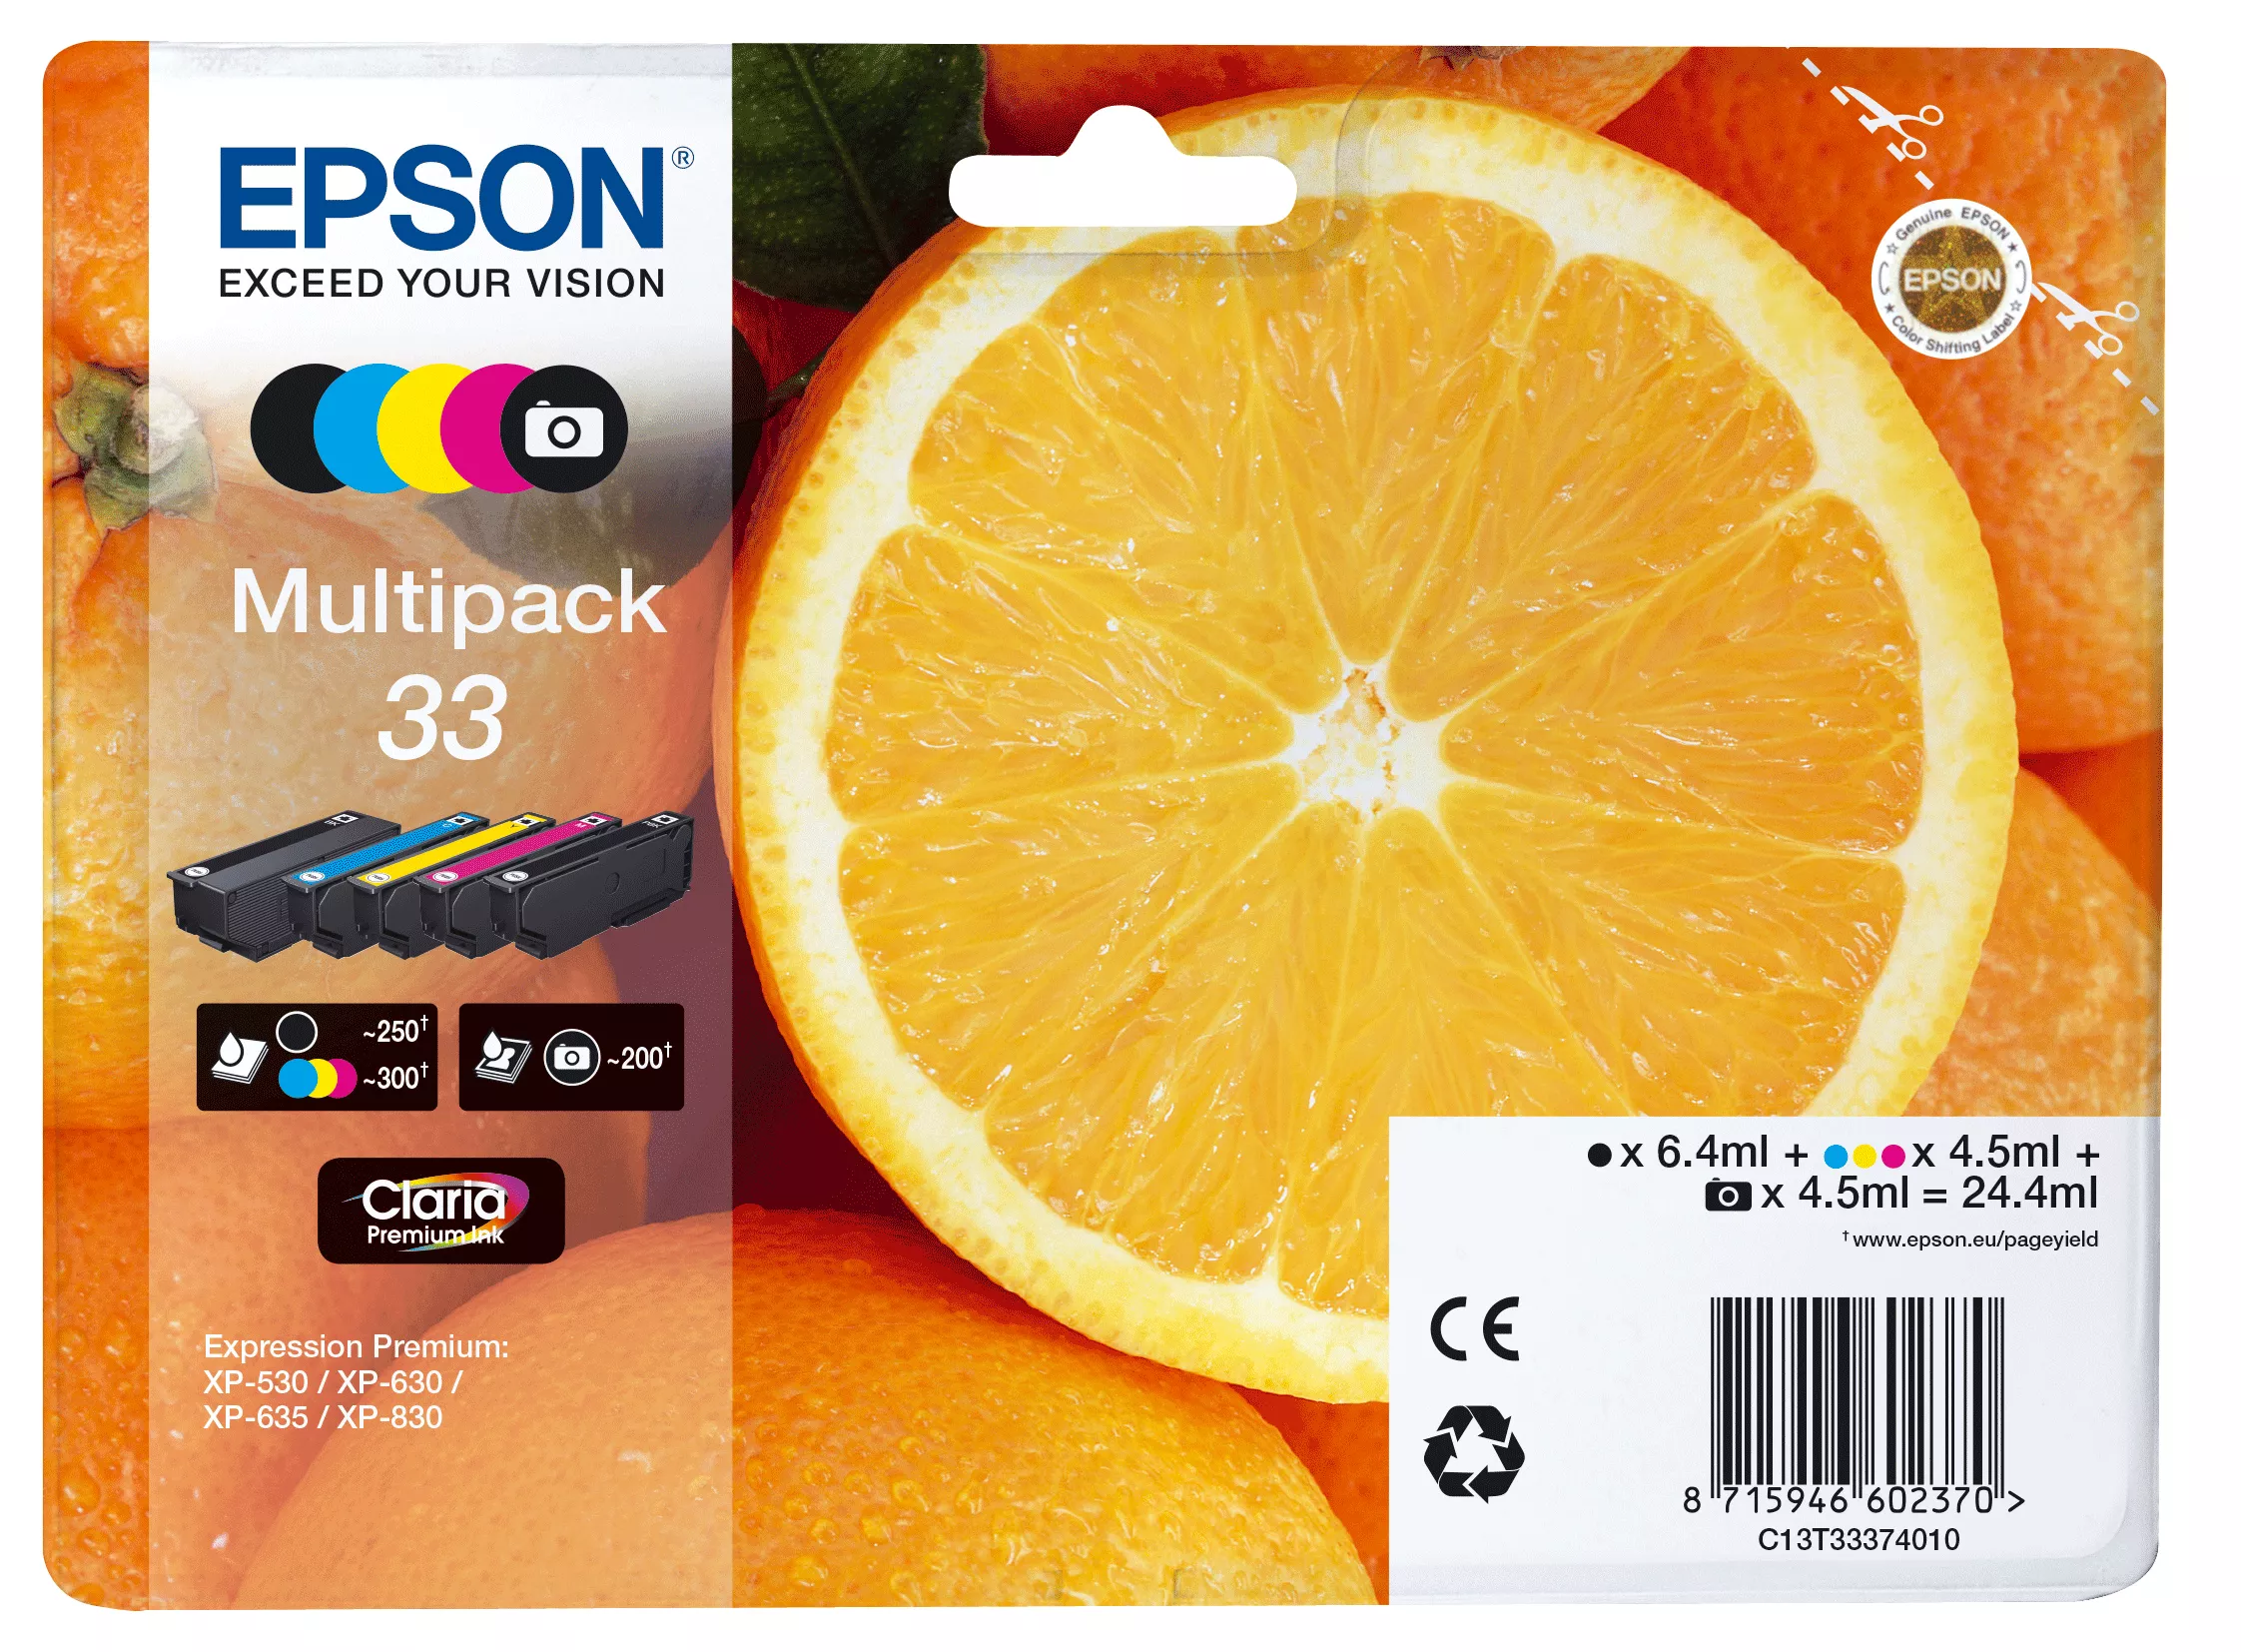 Achat EPSON Multipack Oranges alarmé - Encre Claria Premium - 8715946645285